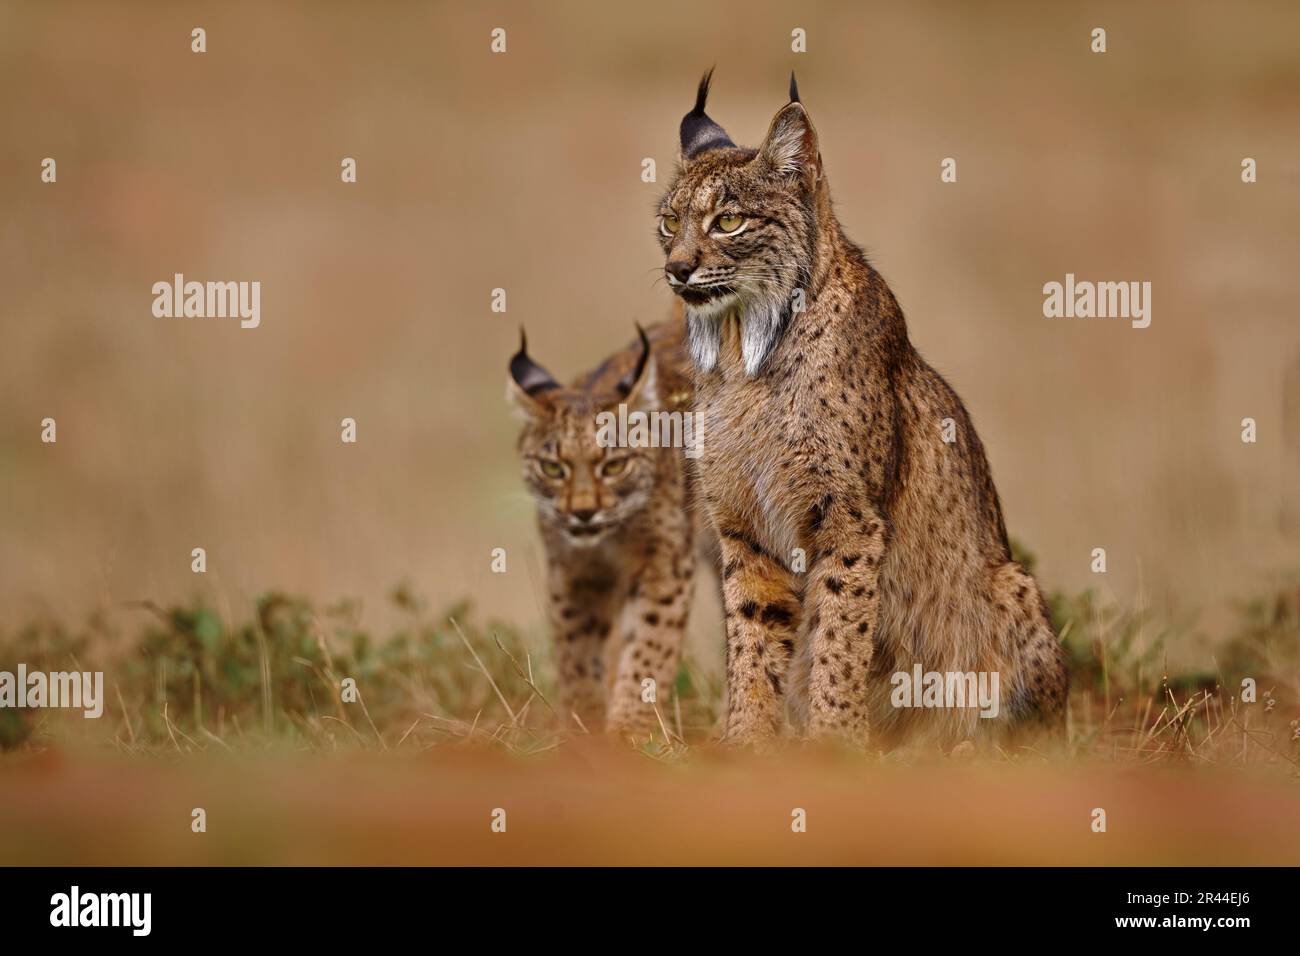 Lynx ibérique, Lynx pardinus, chat sauvage endémique à la péninsule ibérique dans le sud-ouest de l'Espagne en Europe. Rare promenade de chat dans l'habitat de la nature. Féline canine Banque D'Images